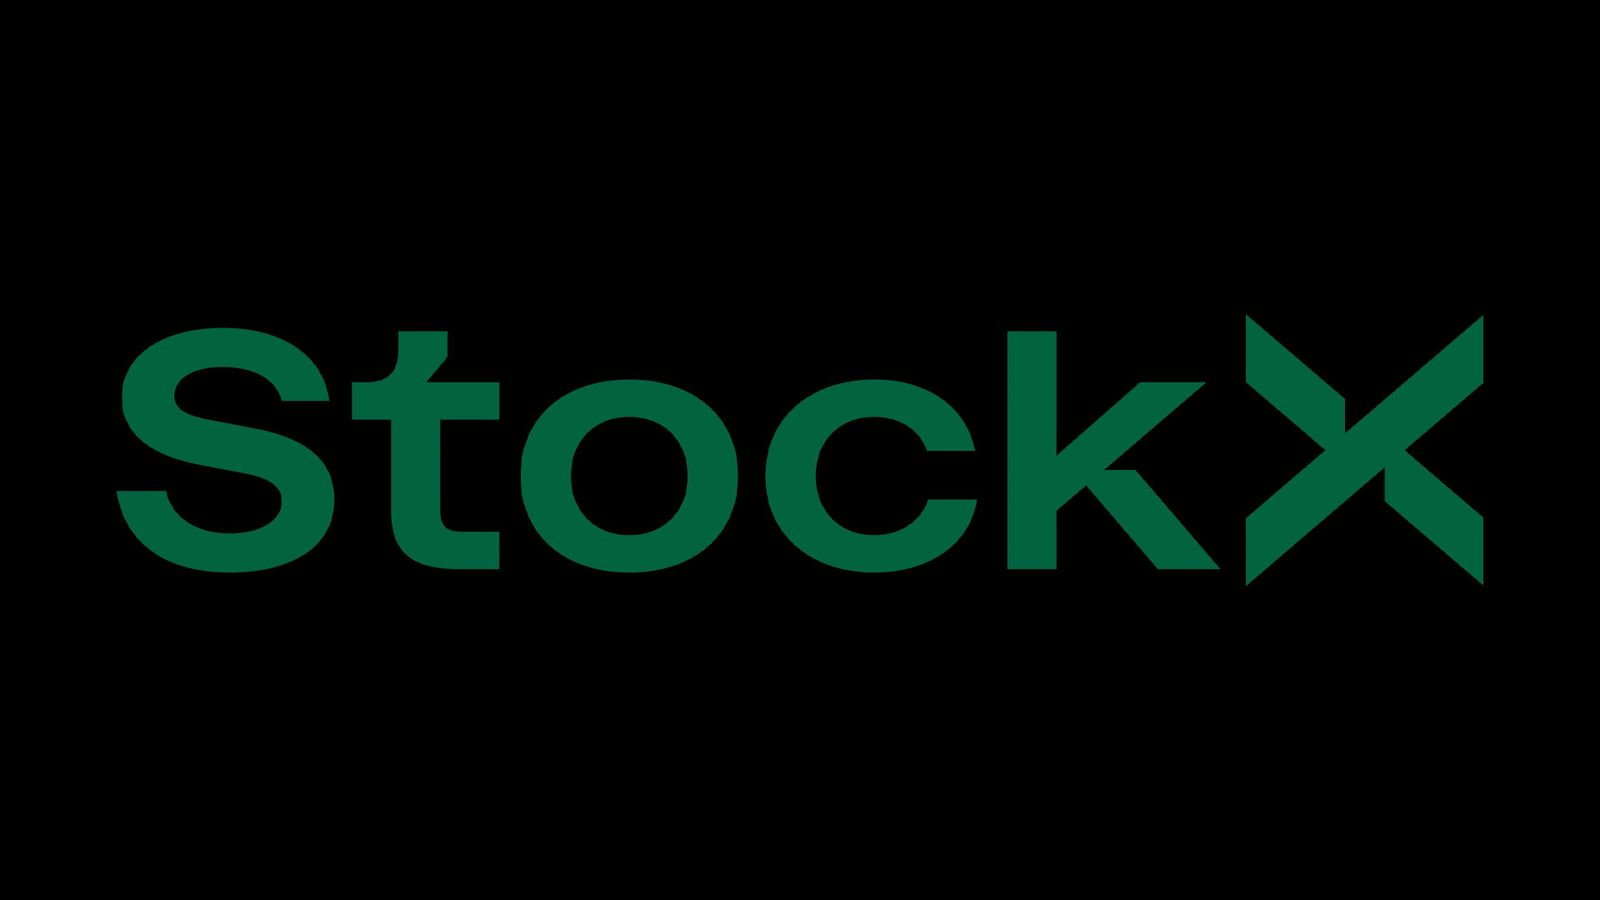 StockX logo in green.